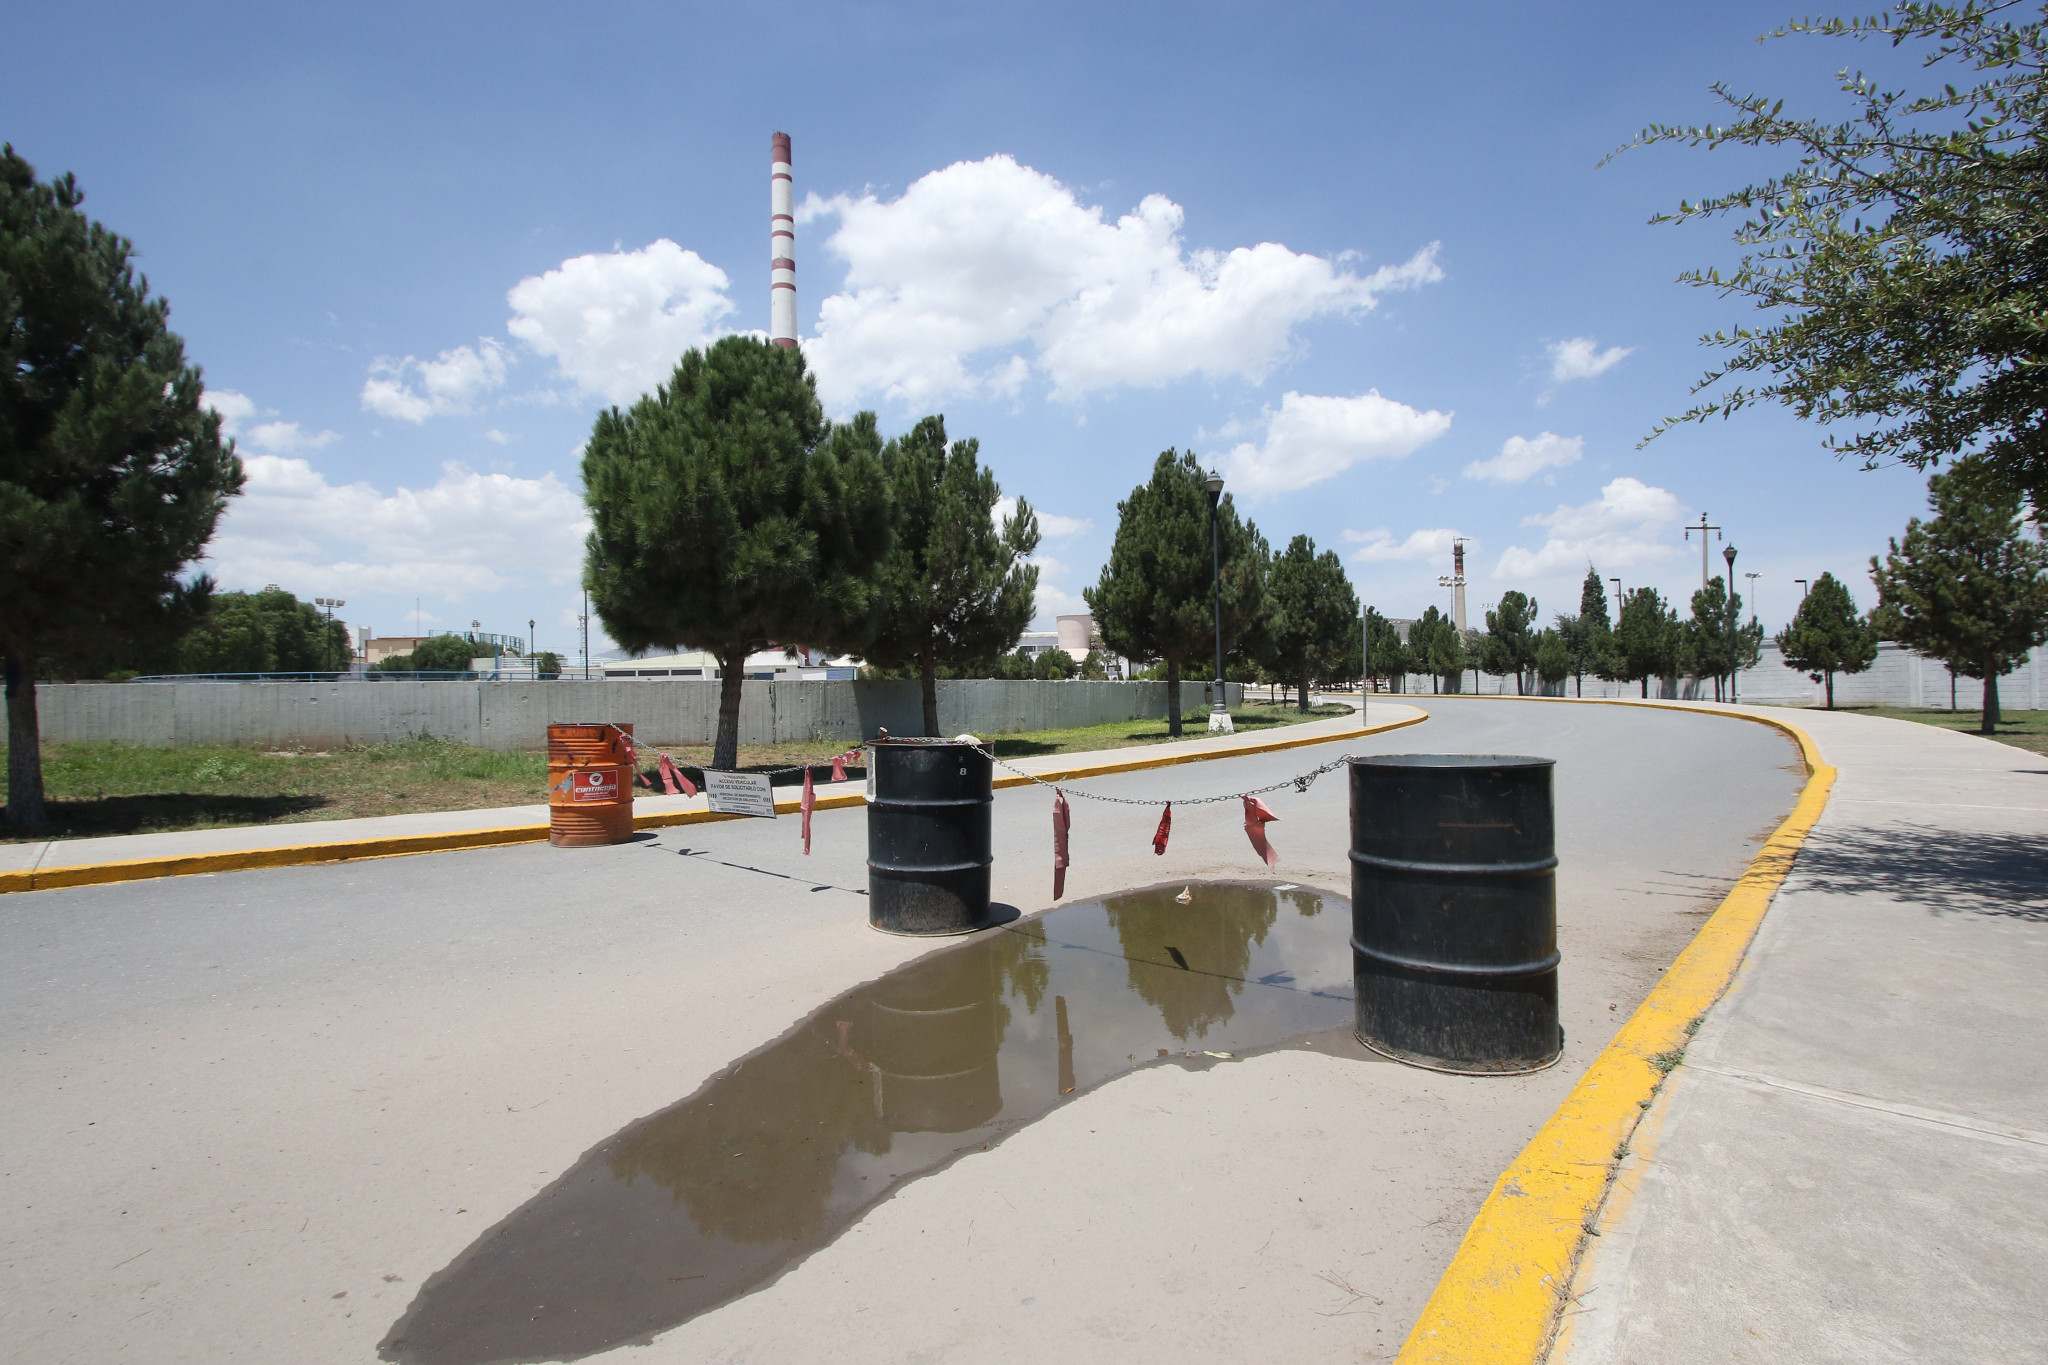 $!Parques Deportivos de Saltillo, monumento al abandono